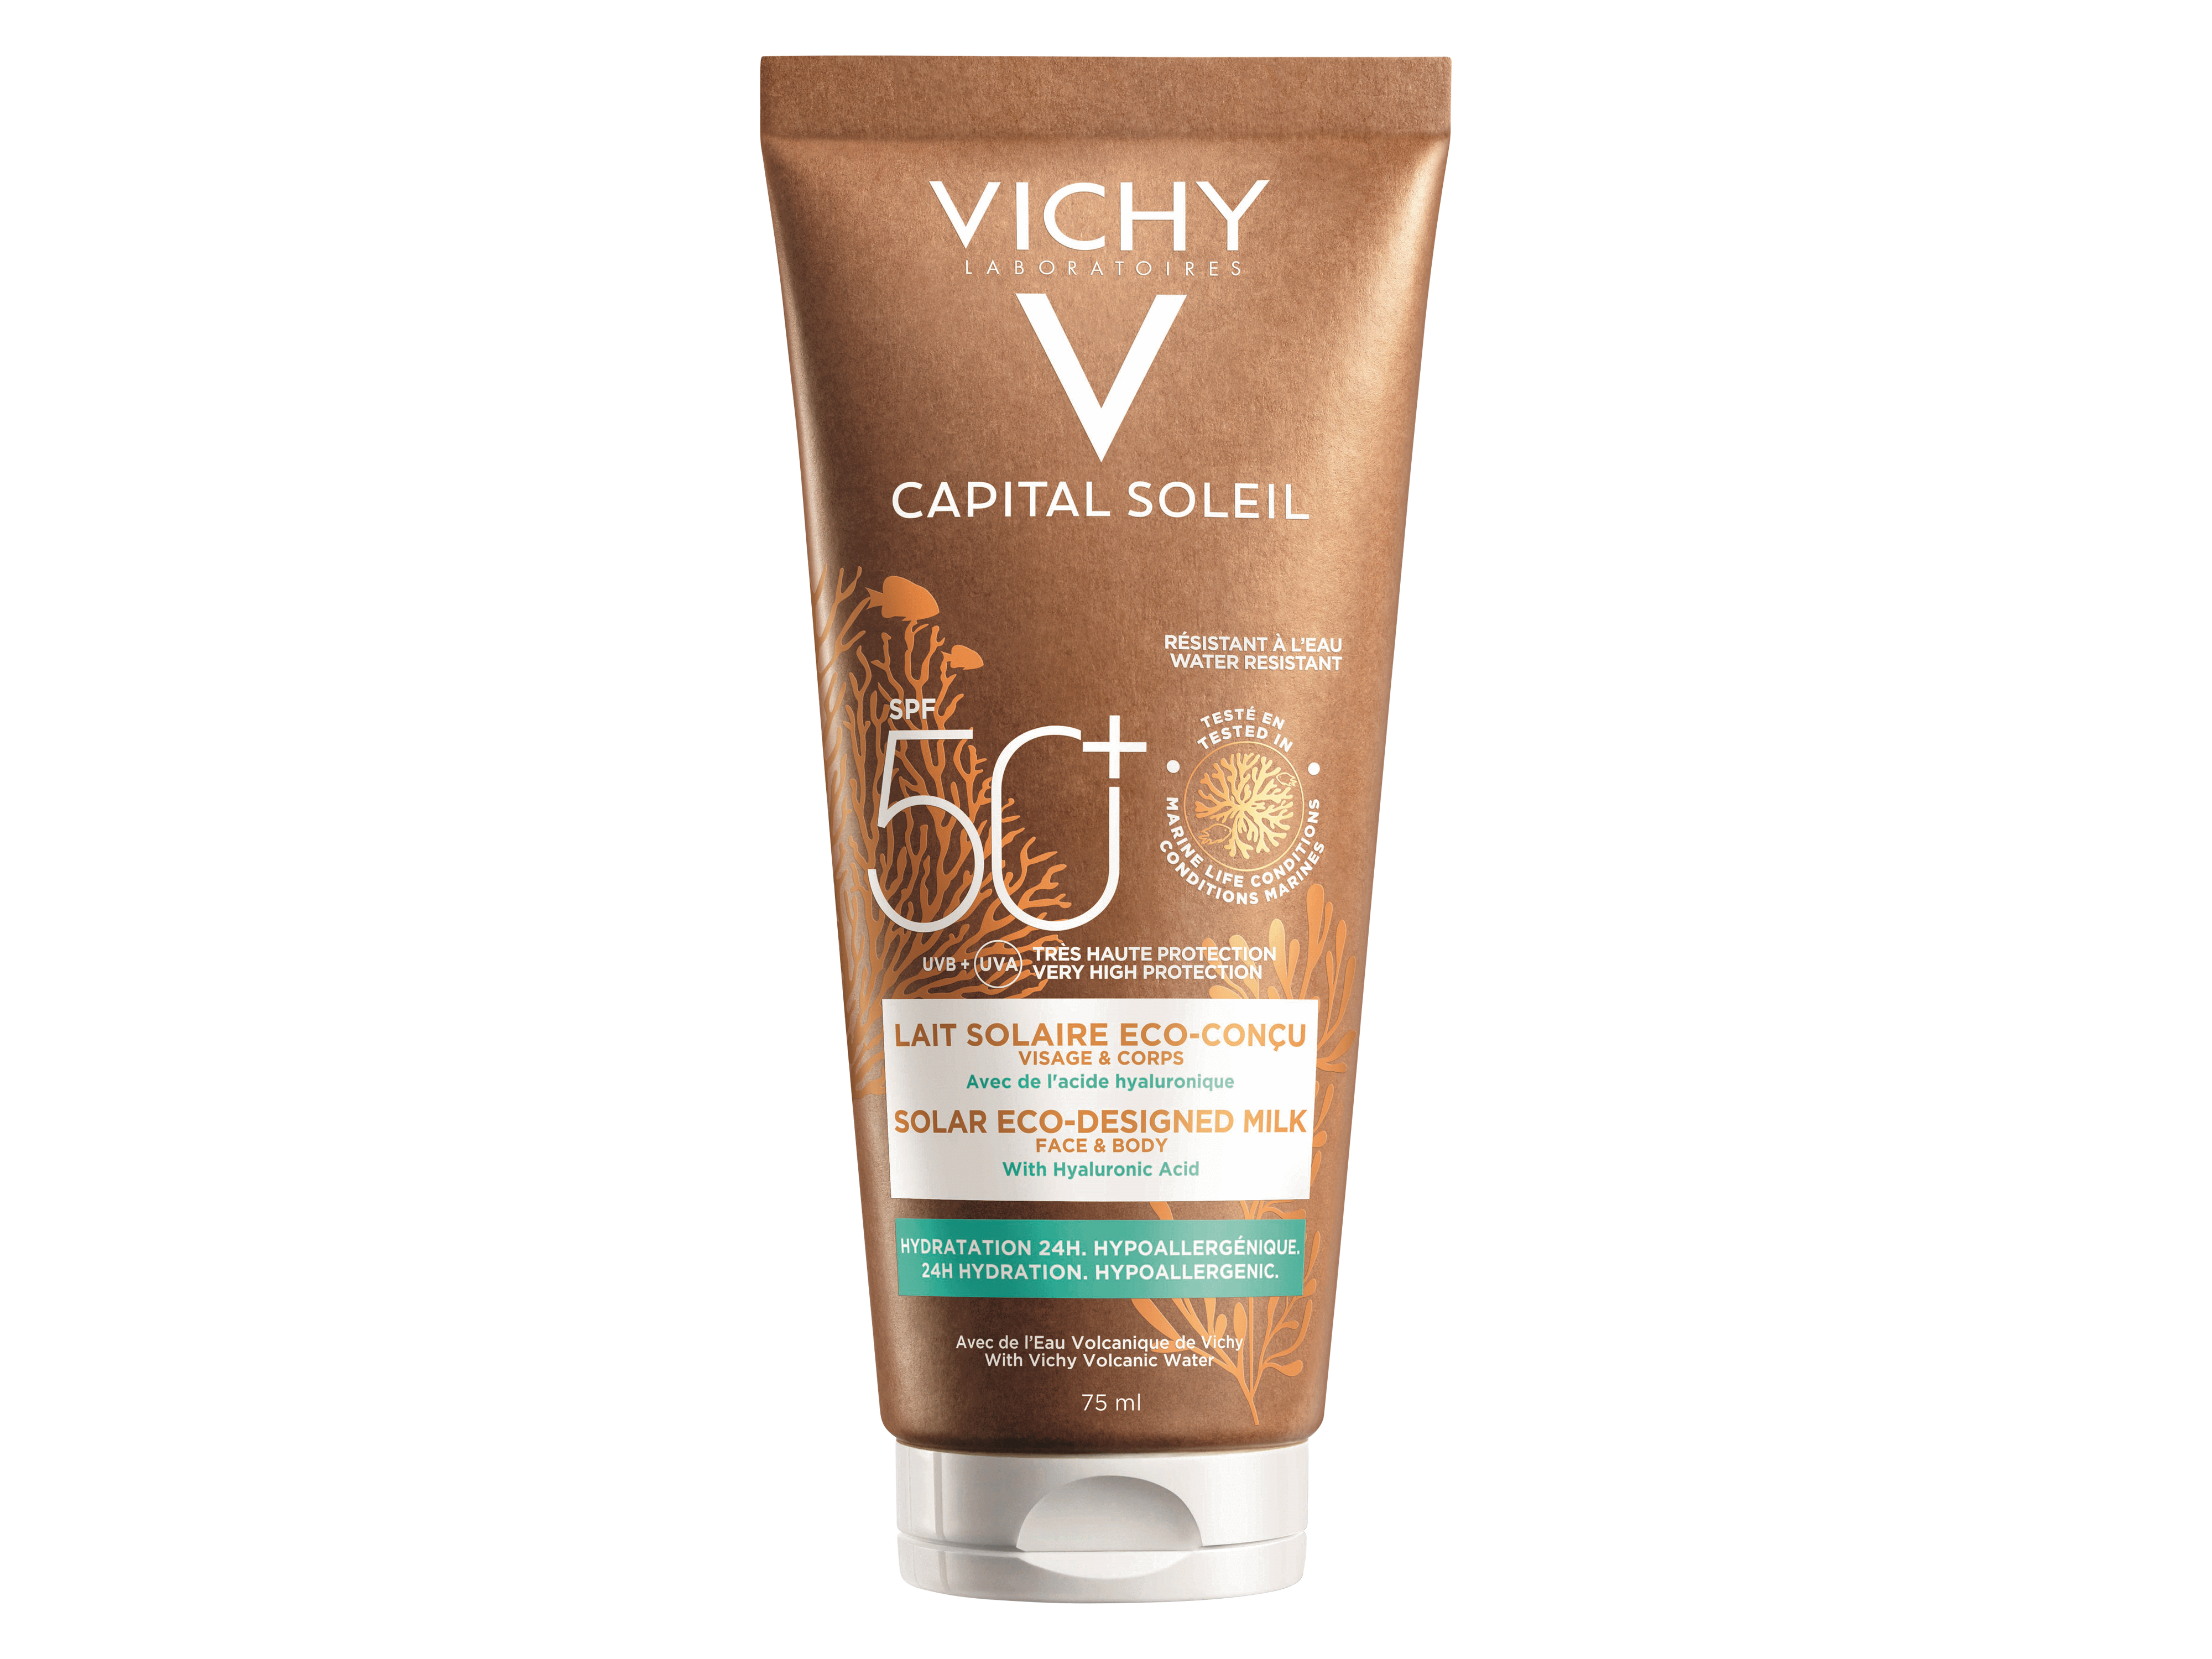 Vichy Capital Soleil Solar Eco-Designed Milk, SPF 50+, 75 ml